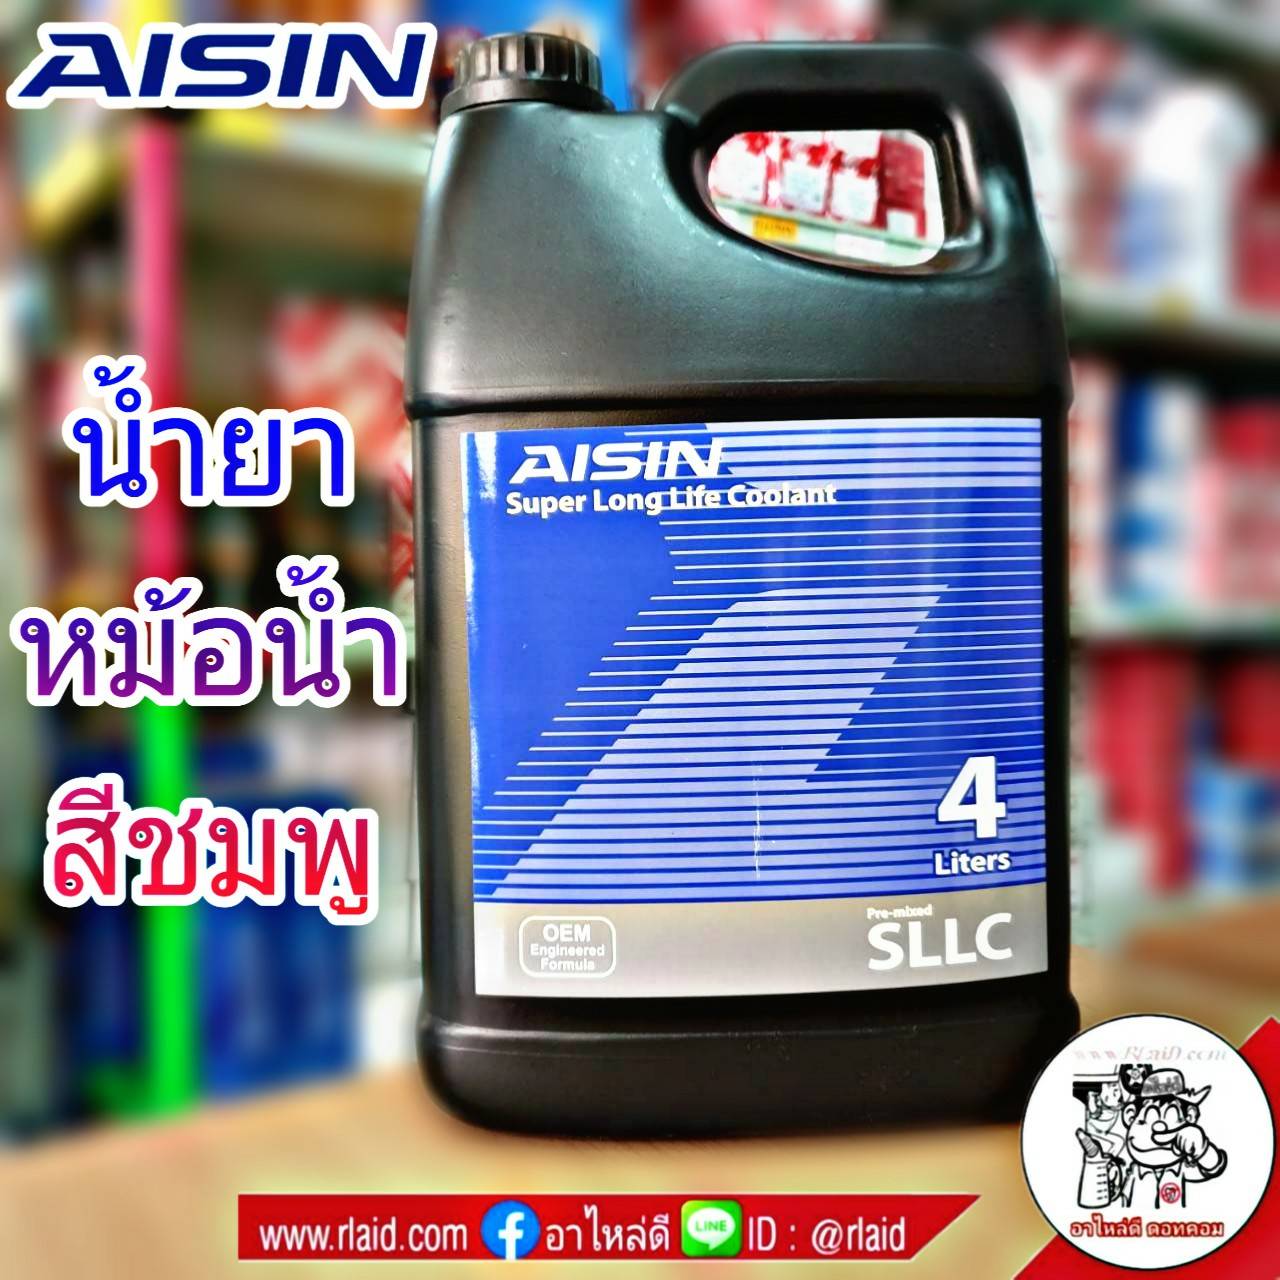 ภาพประกอบคำอธิบาย คูลแลนท์ AISIN ไอซิน สีชมพู 4ลิตร น้ำยาหม้อน้ำ น้ำยาเติมหม้อน้ำ น้ำยาหล่อเย็น Coolant